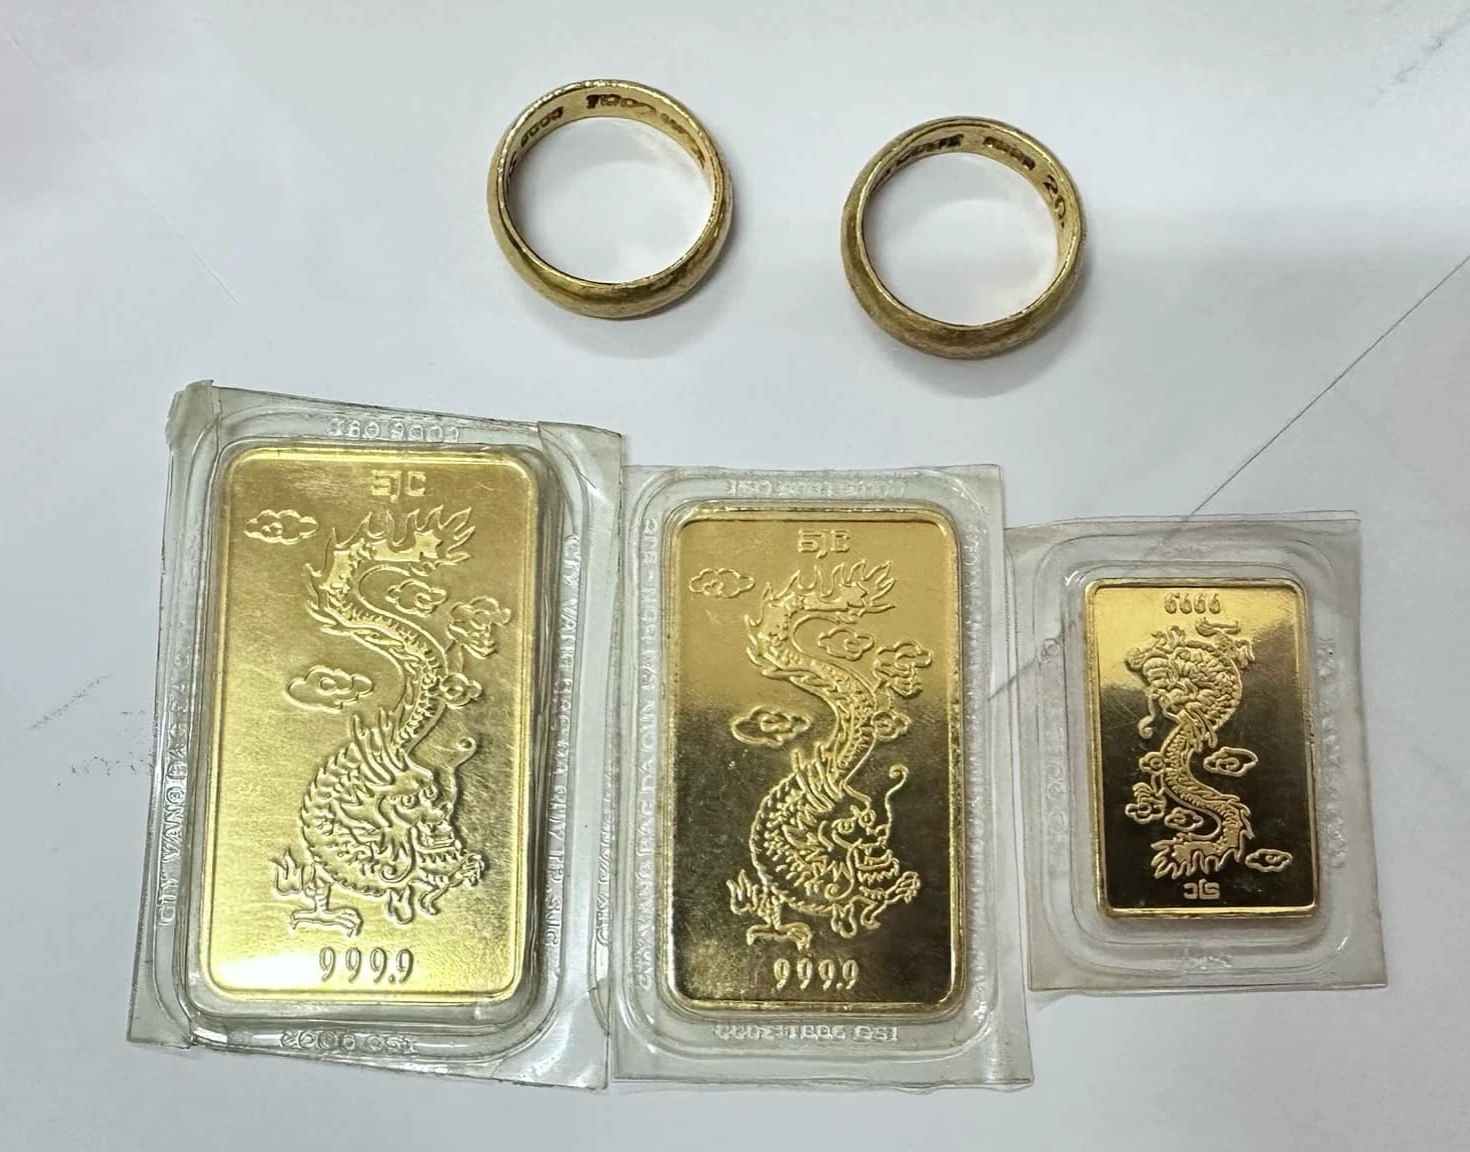 Phát hiện nhiều kim loại nghi là vàng 9999 'bỏ quên' trong túi đồ từ thiện ở TP.Thủ Đức